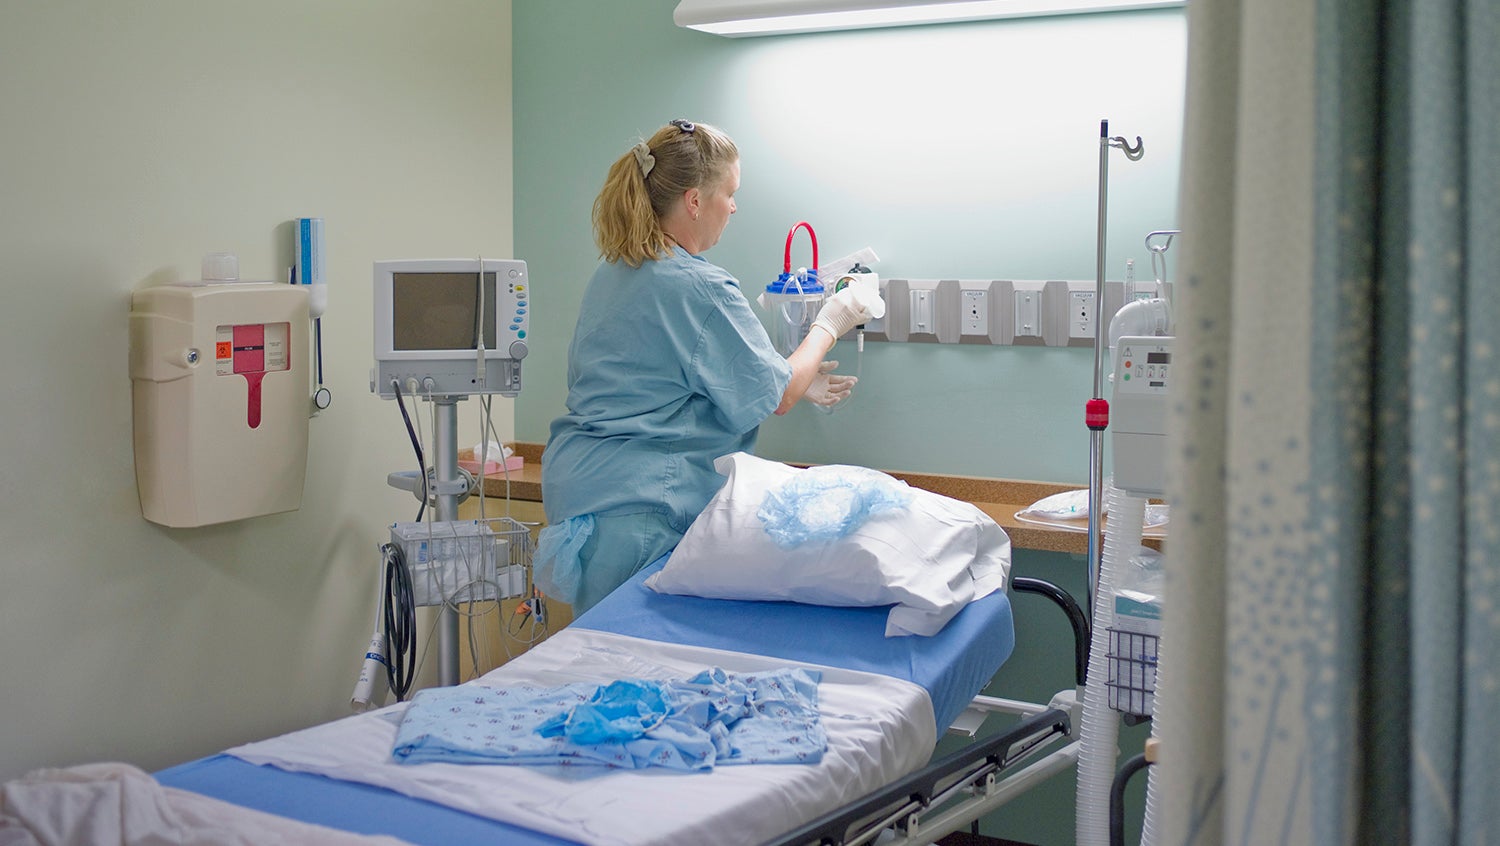 case management nurse prepares an empty hospital bed after patient discharge